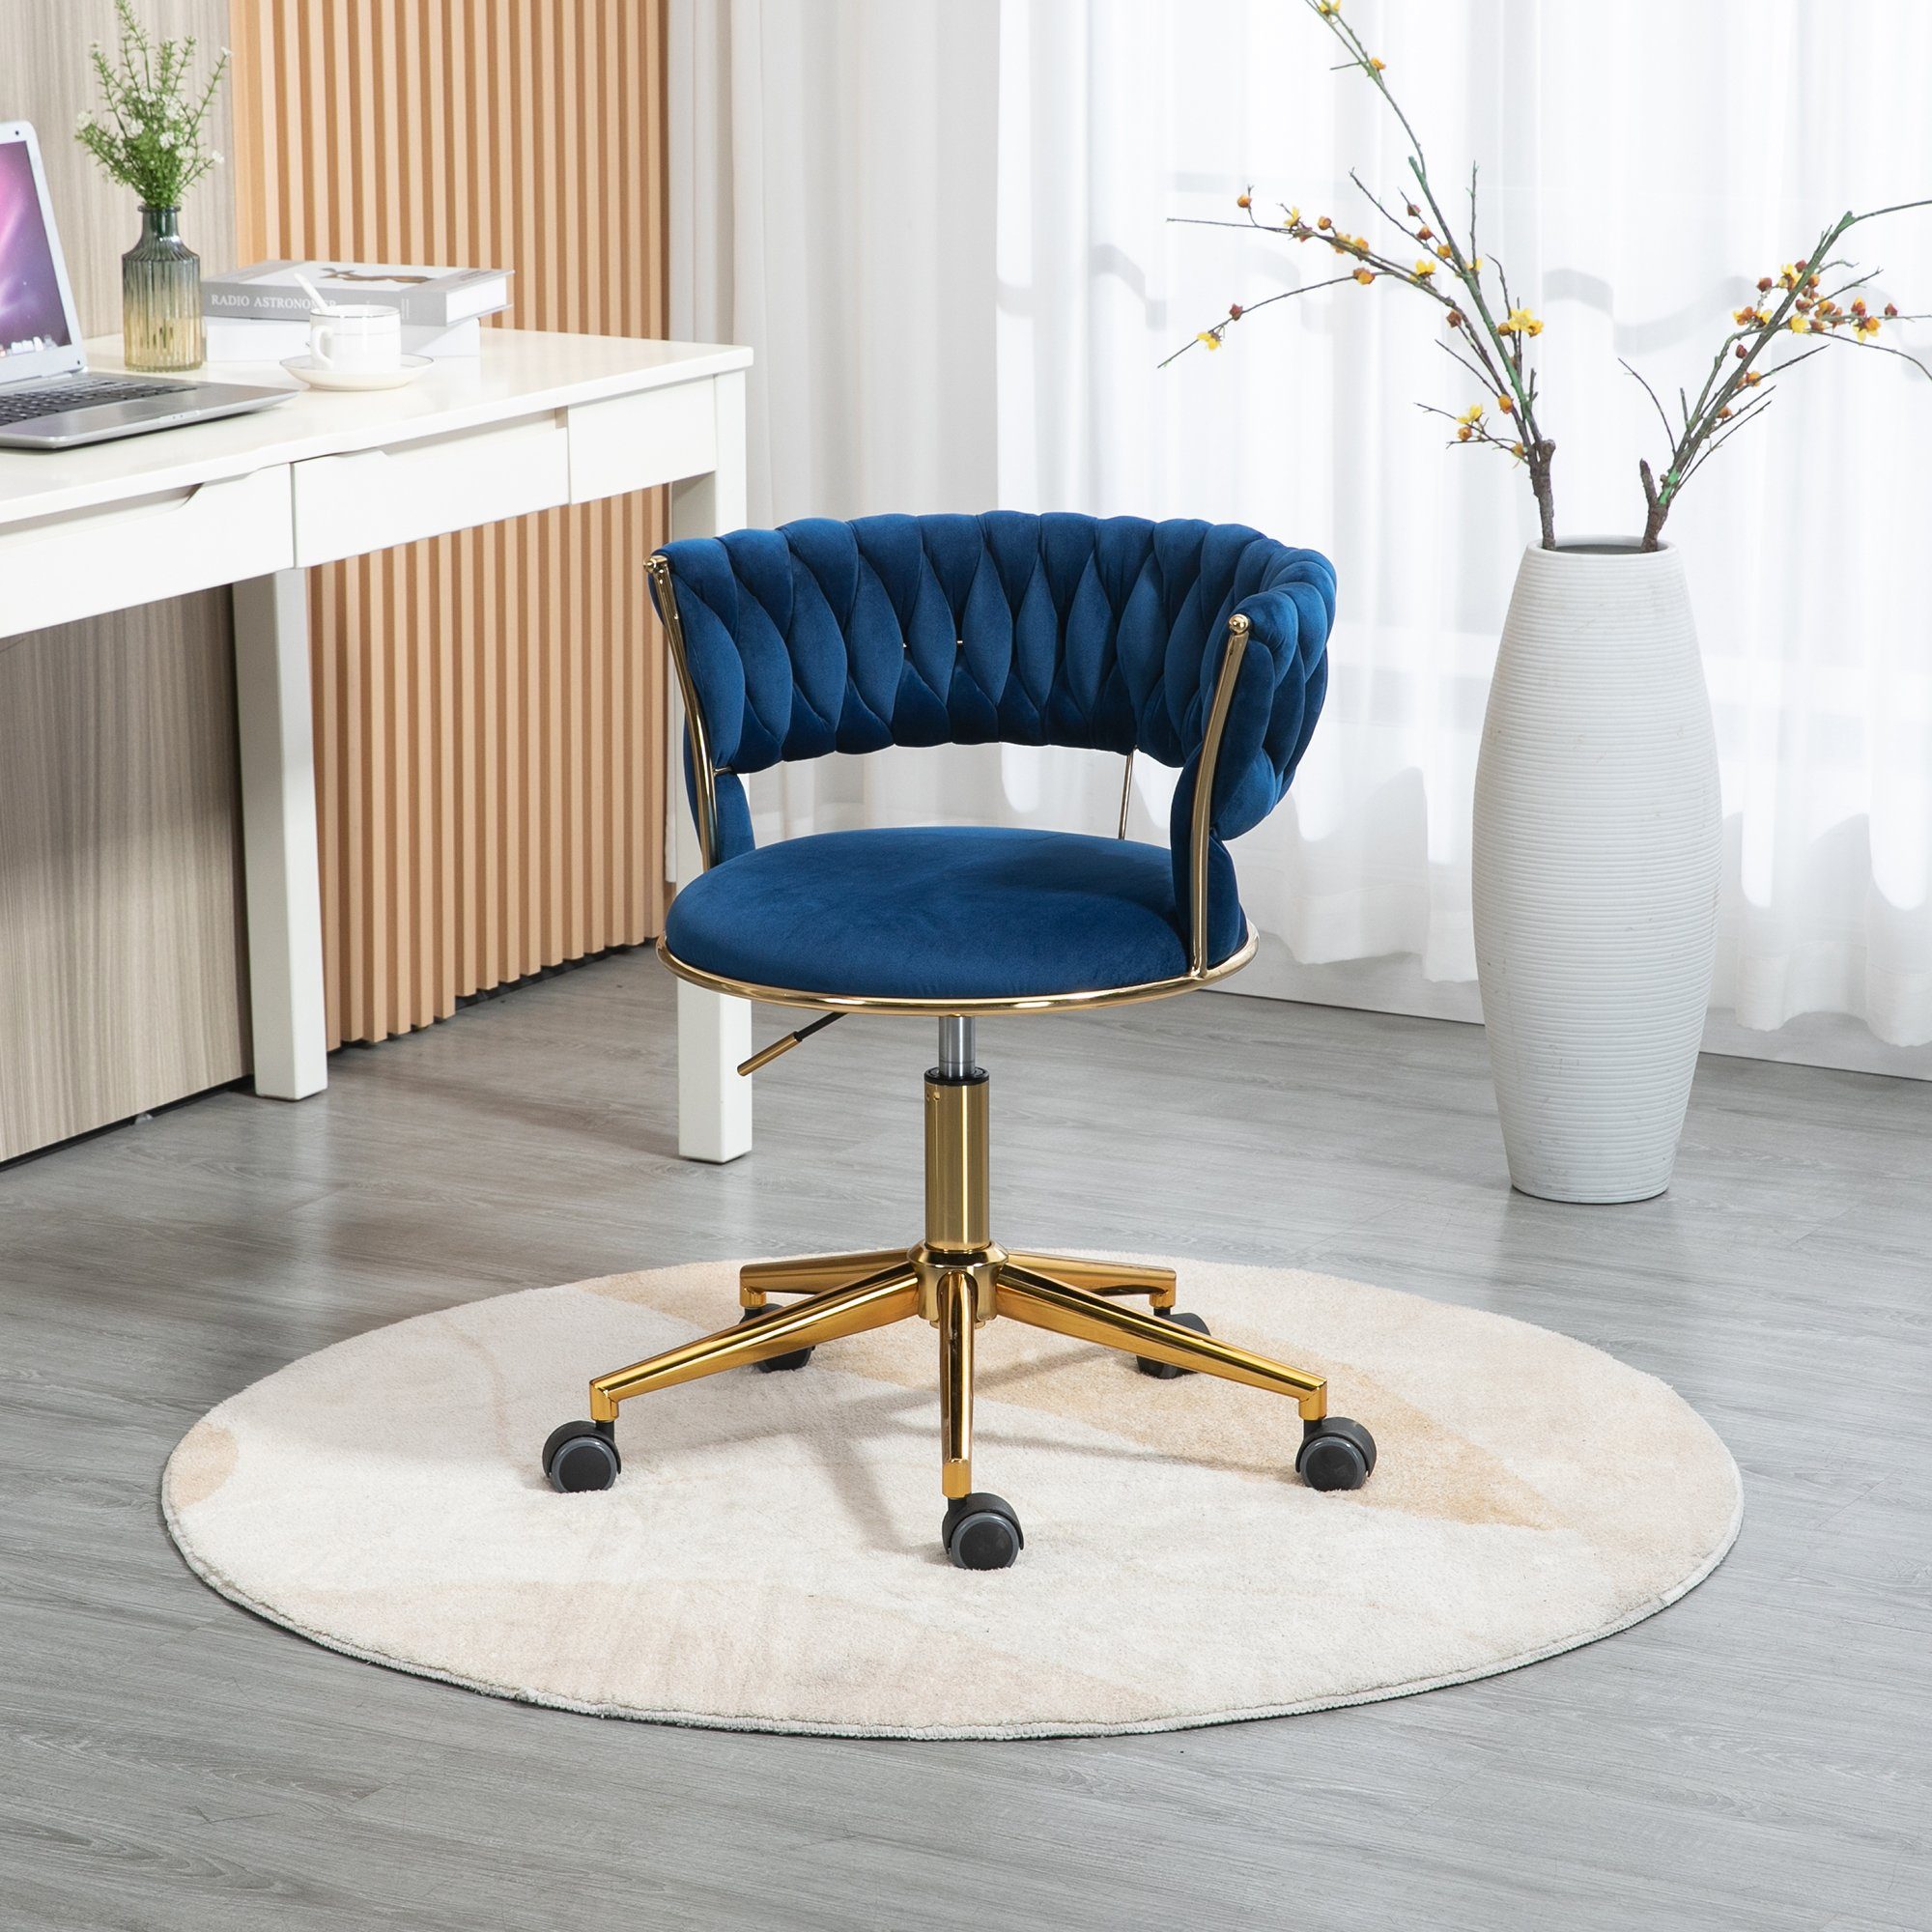 Odikalo Drehstuhl Bürostuhl Freizeit mehrfarbig Blau Beine 360° drehbar Make-up Samt goldene